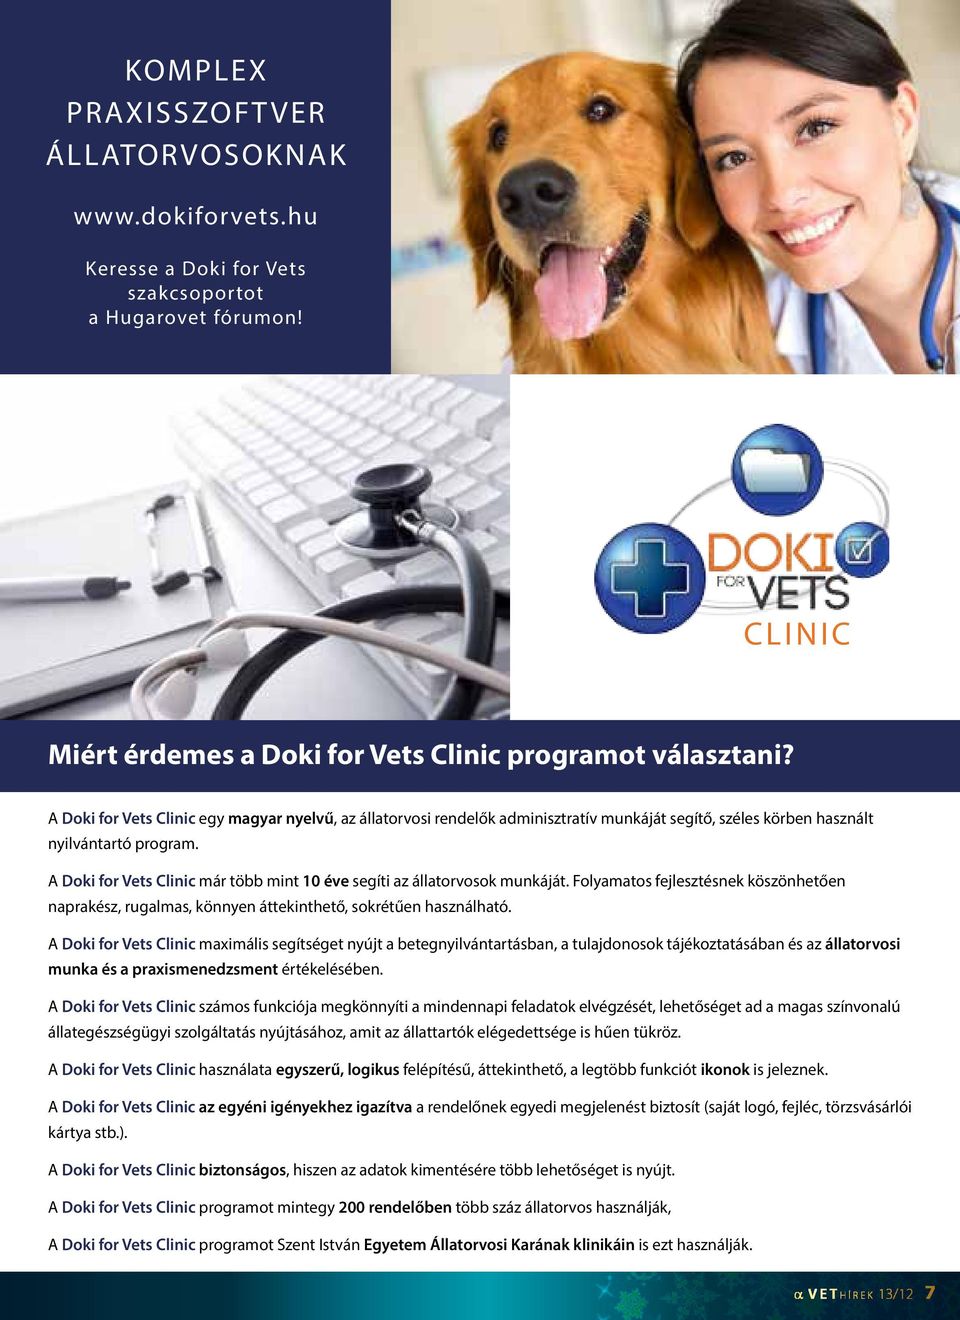 A Doki for Vets Clinic már több mint 10 éve segíti az állatorvosok munkáját. Folyamatos fejlesztésnek köszönhetően naprakész, rugalmas, könnyen áttekinthető, sokrétűen használható.